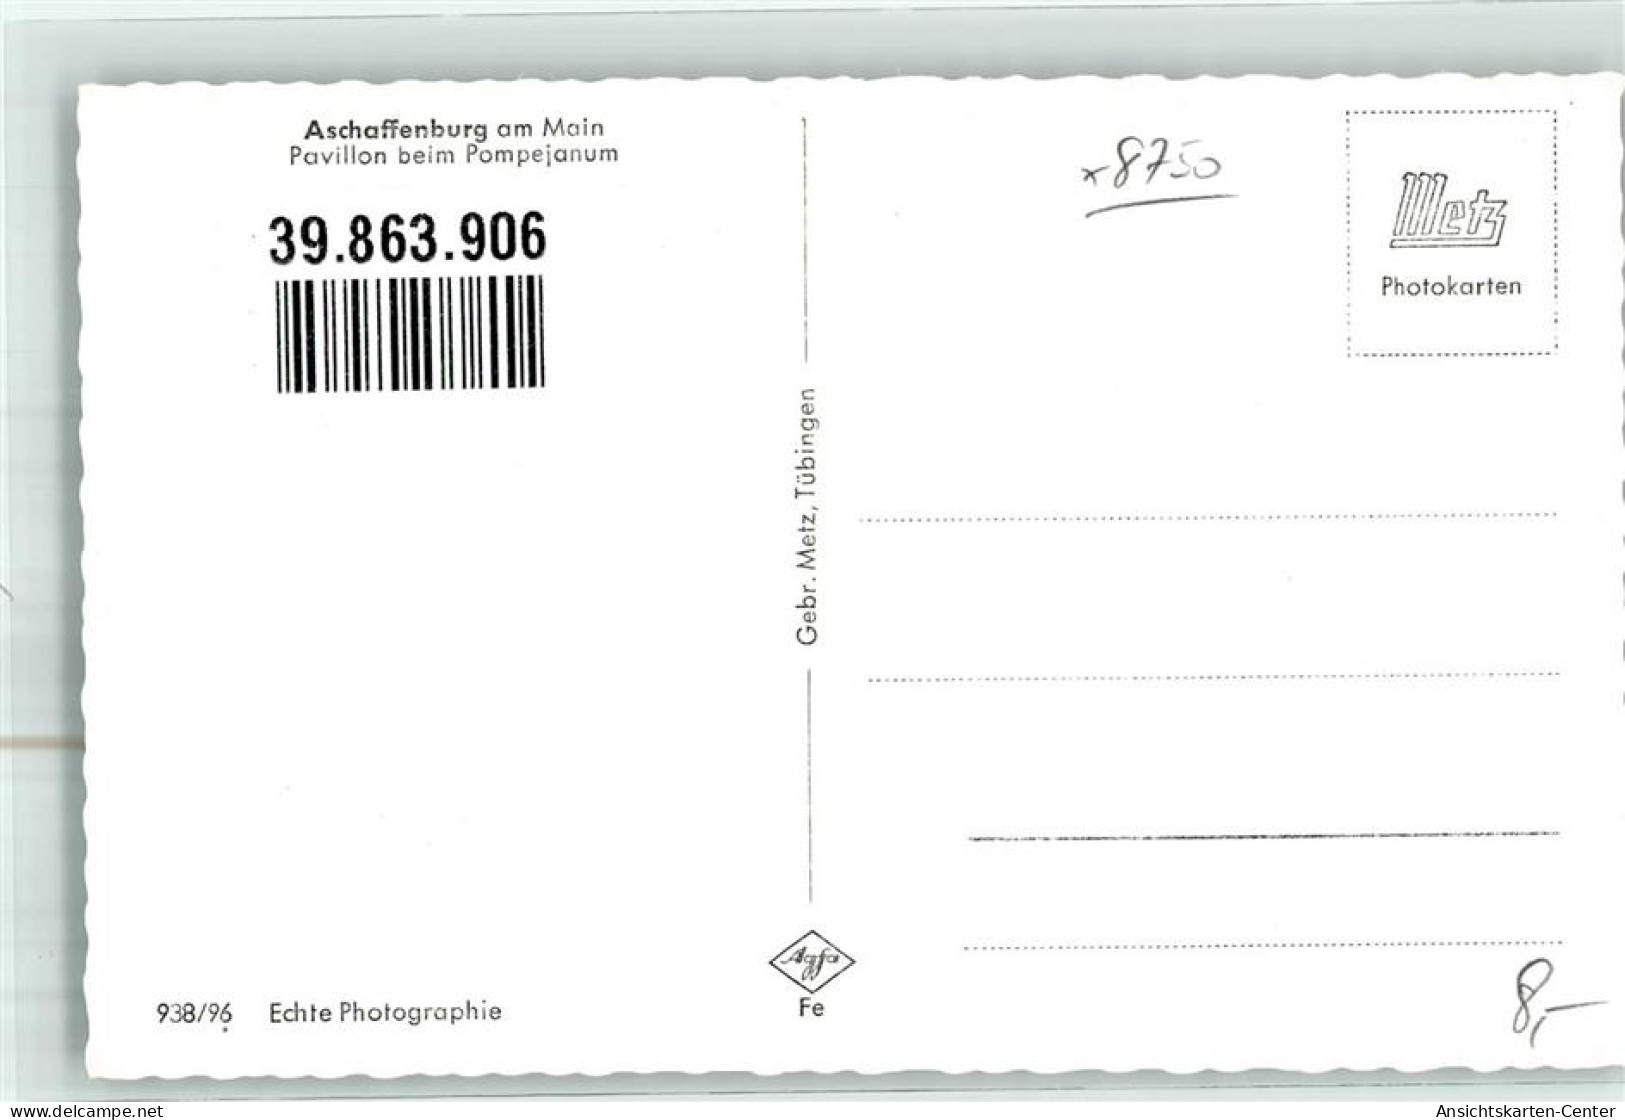 39863906 - Aschaffenburg - Aschaffenburg